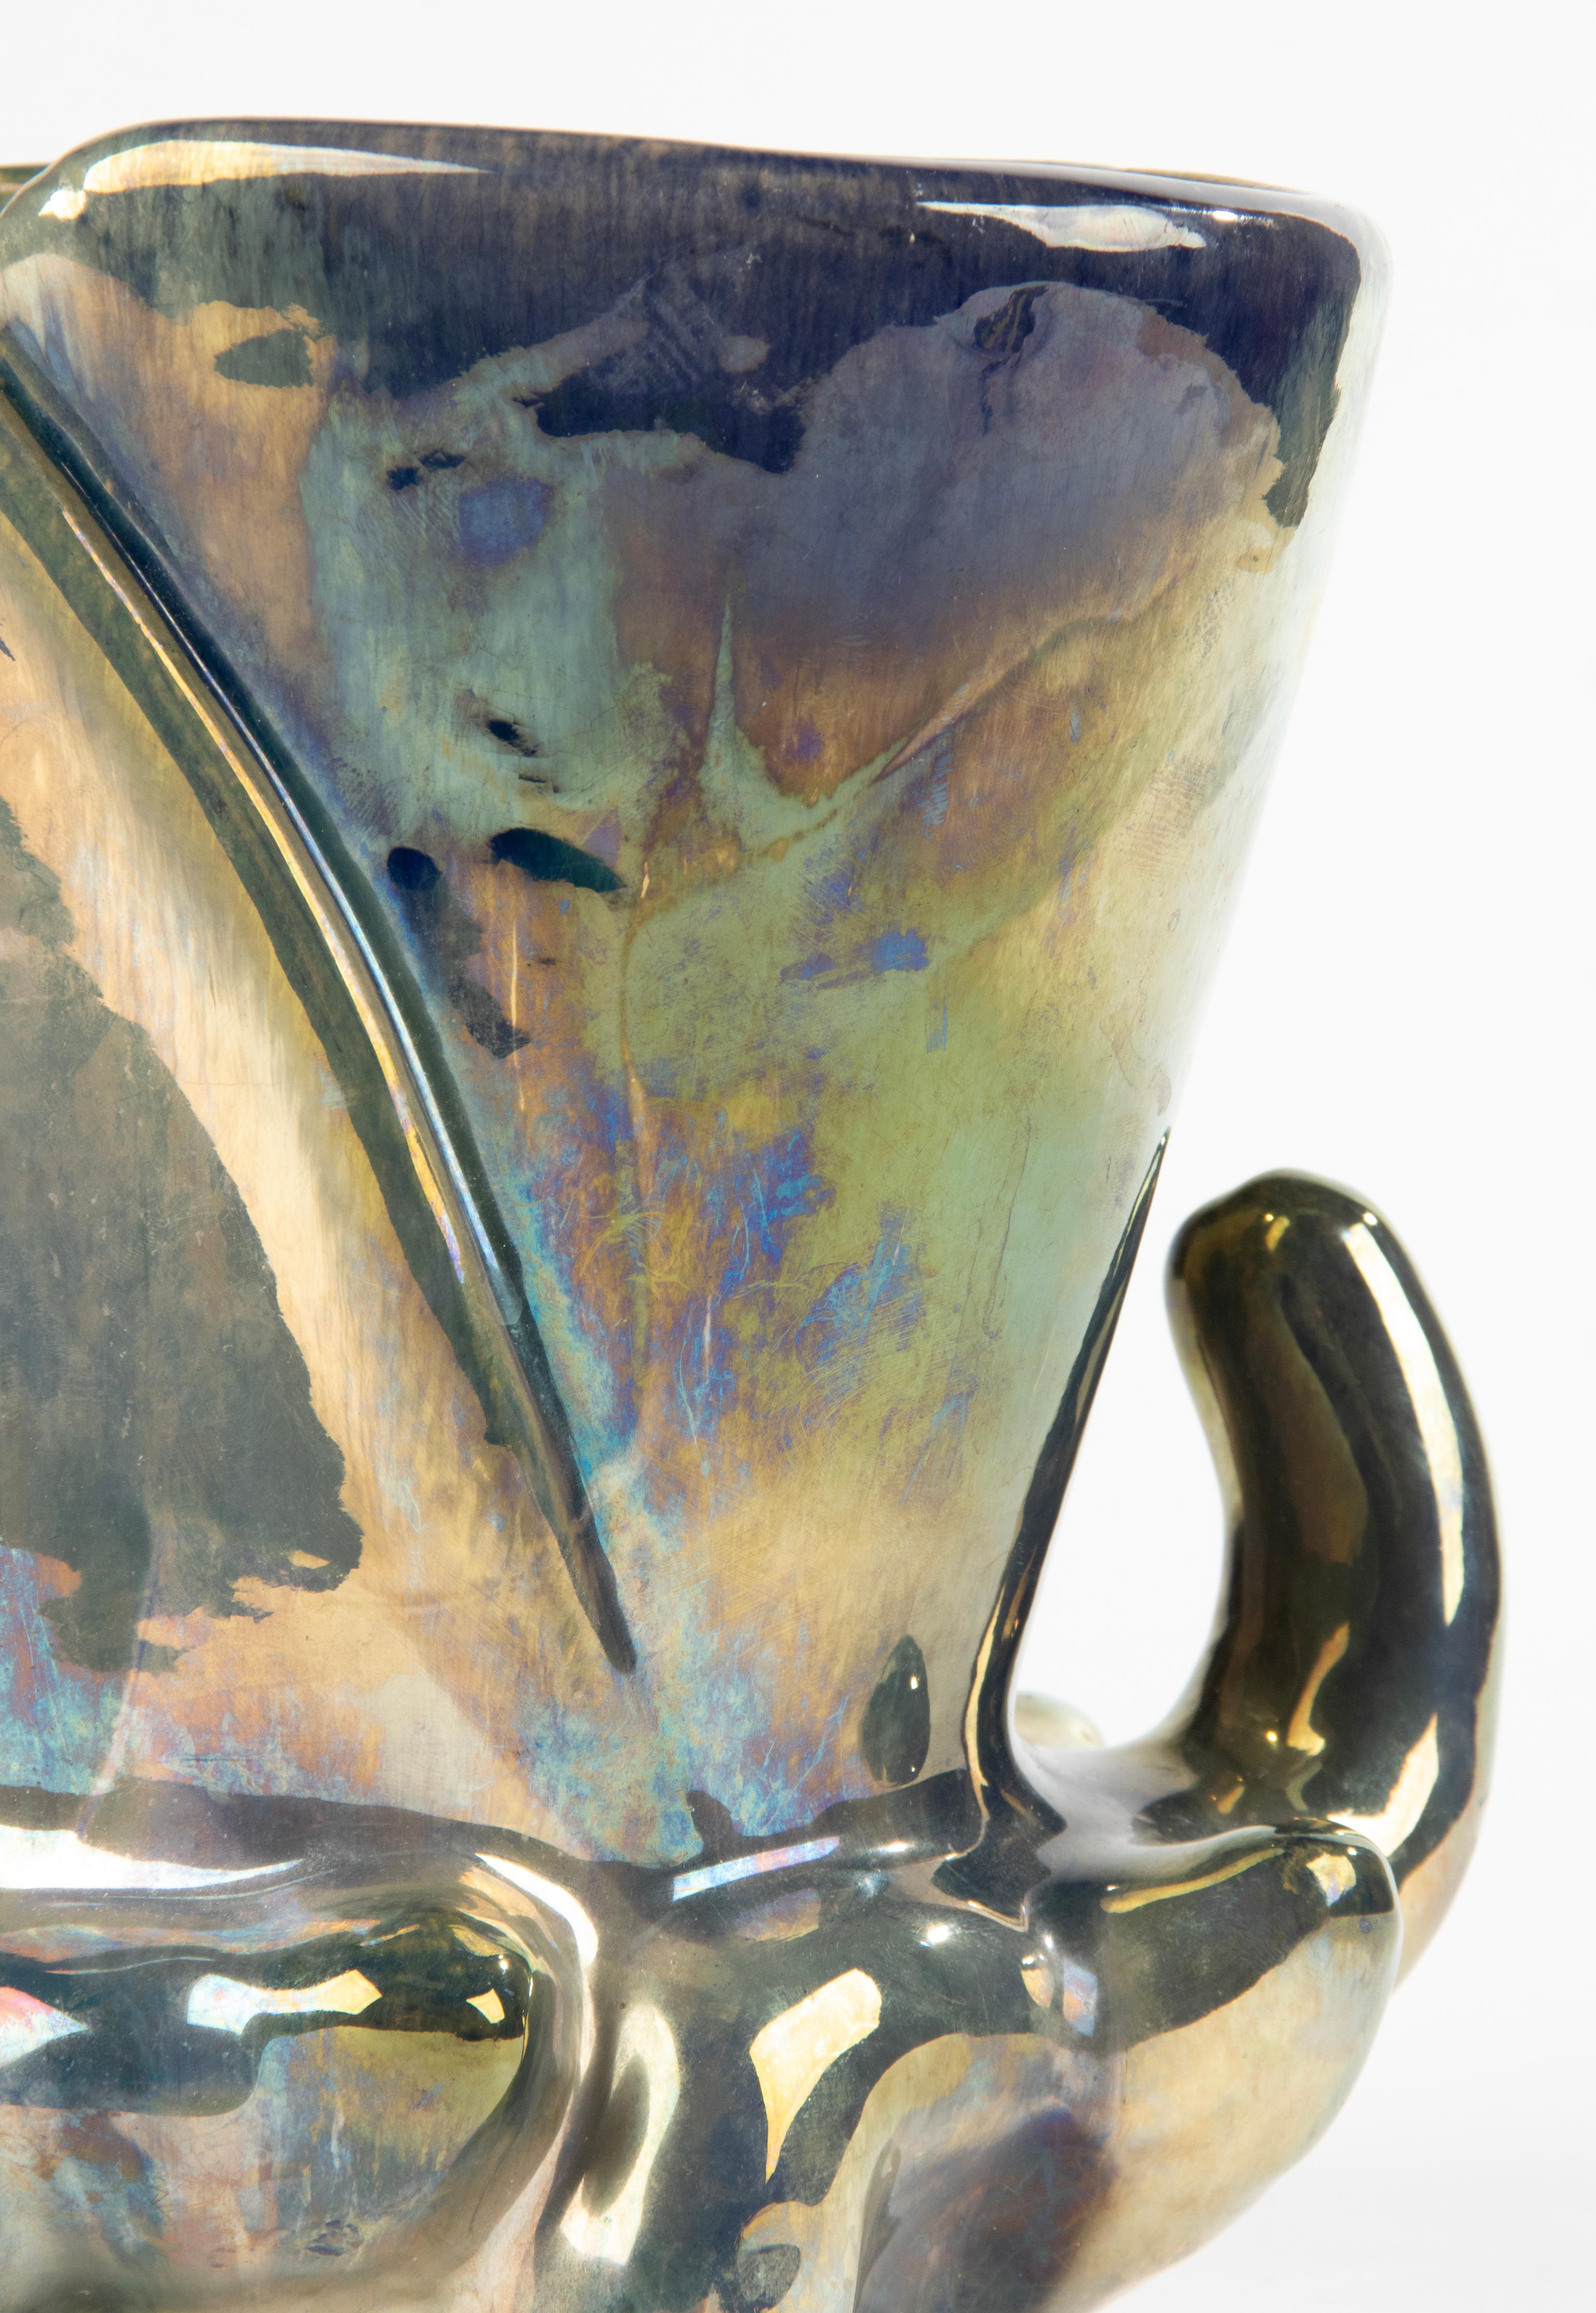 Schöne Keramikvase des französischen Herstellers Rambervilliers. Die Vase stammt aus der Zeit des Art déco, ca. 1920/1930. Die Vase hat eine schöne schillernde Glasurschicht, die für die Keramik von Rambervilliers charakteristisch ist. Die Vase ist